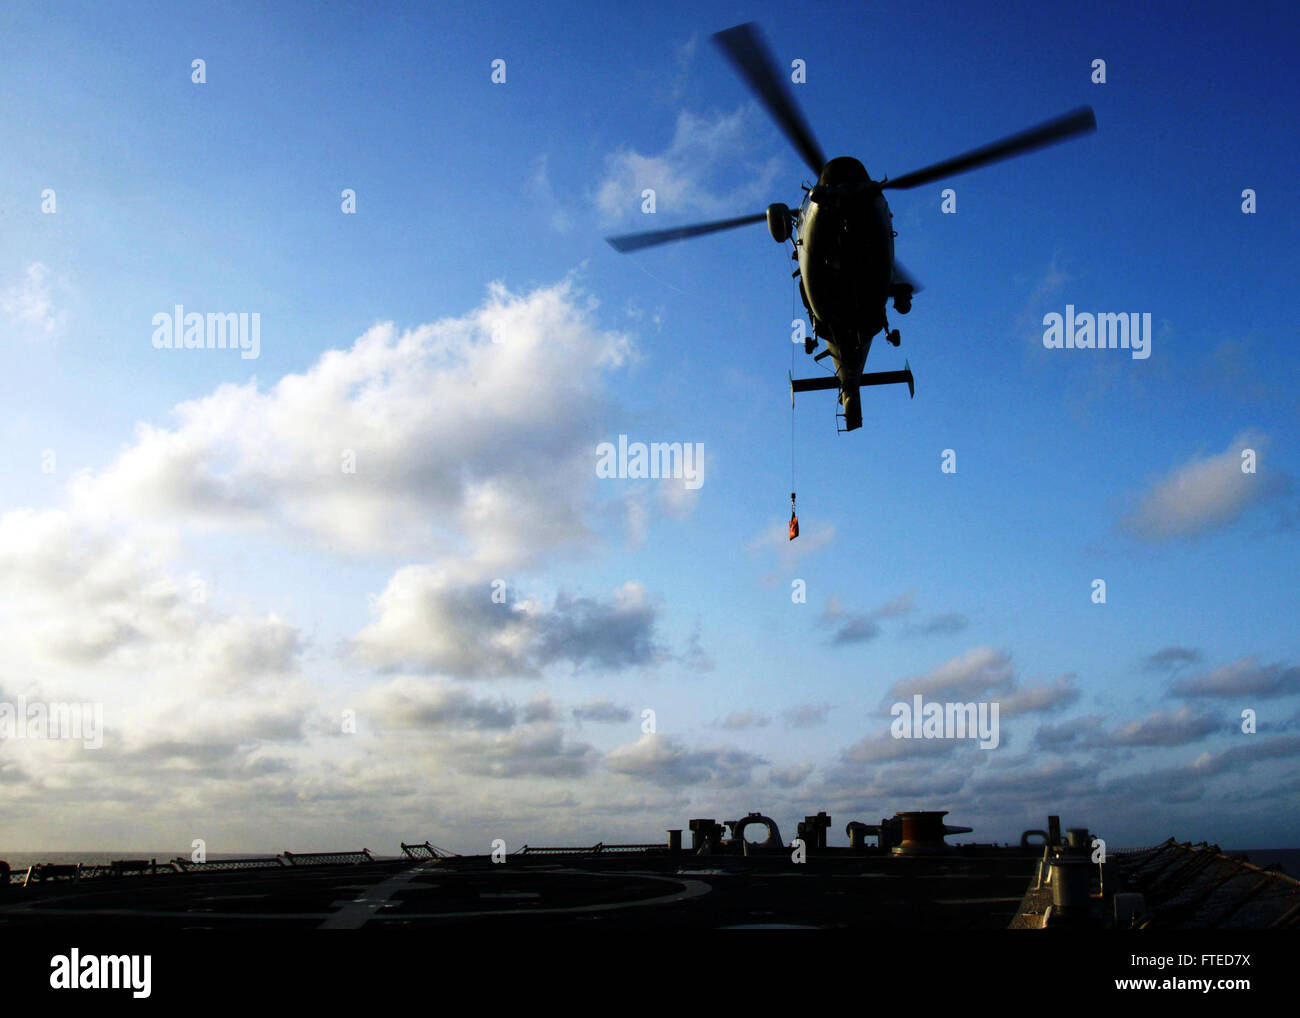 140409-N-CH661-084 MAR MEDITERRÁNEO (Abril 9, 2014) - Un helicóptero Panther565, asignado a los israelíes Sa'ar 5-clase corbeta INS Eilat (501), lleva a cabo un reabastecimiento vertical con el misil guiado por el destructor USS Ramage (DDG 61) en apoyo del ejercicio Noble, Dina, una multi-nacional anual de ejercicio de entrenamiento realizado con las fuerzas navales israelíes y helénica. Ramage, homeported en Norfolk, Virginia, es un despliegue programado apoyar operaciones de seguridad marítima y los esfuerzos de cooperación de seguridad de teatro en los EE.UU. 6ª Flota de la zona de operaciones. (Ee.Uu. Navy photo by Mass Communication Specialist Foto de stock